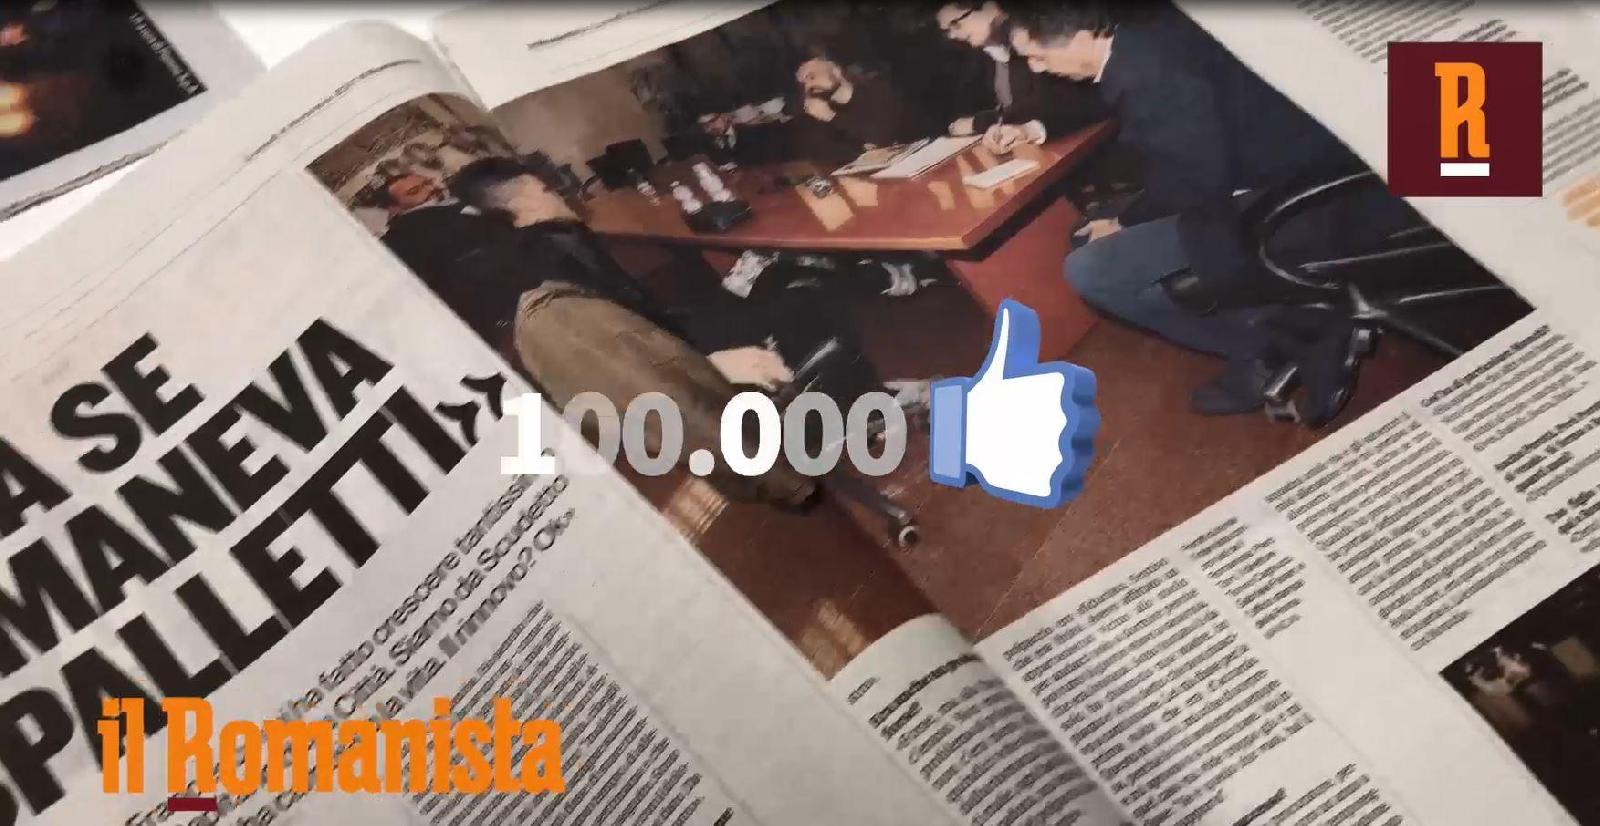 VIDEO - Siamo centomila! Grazie a tutti i nostri lettori cartacei e digitali